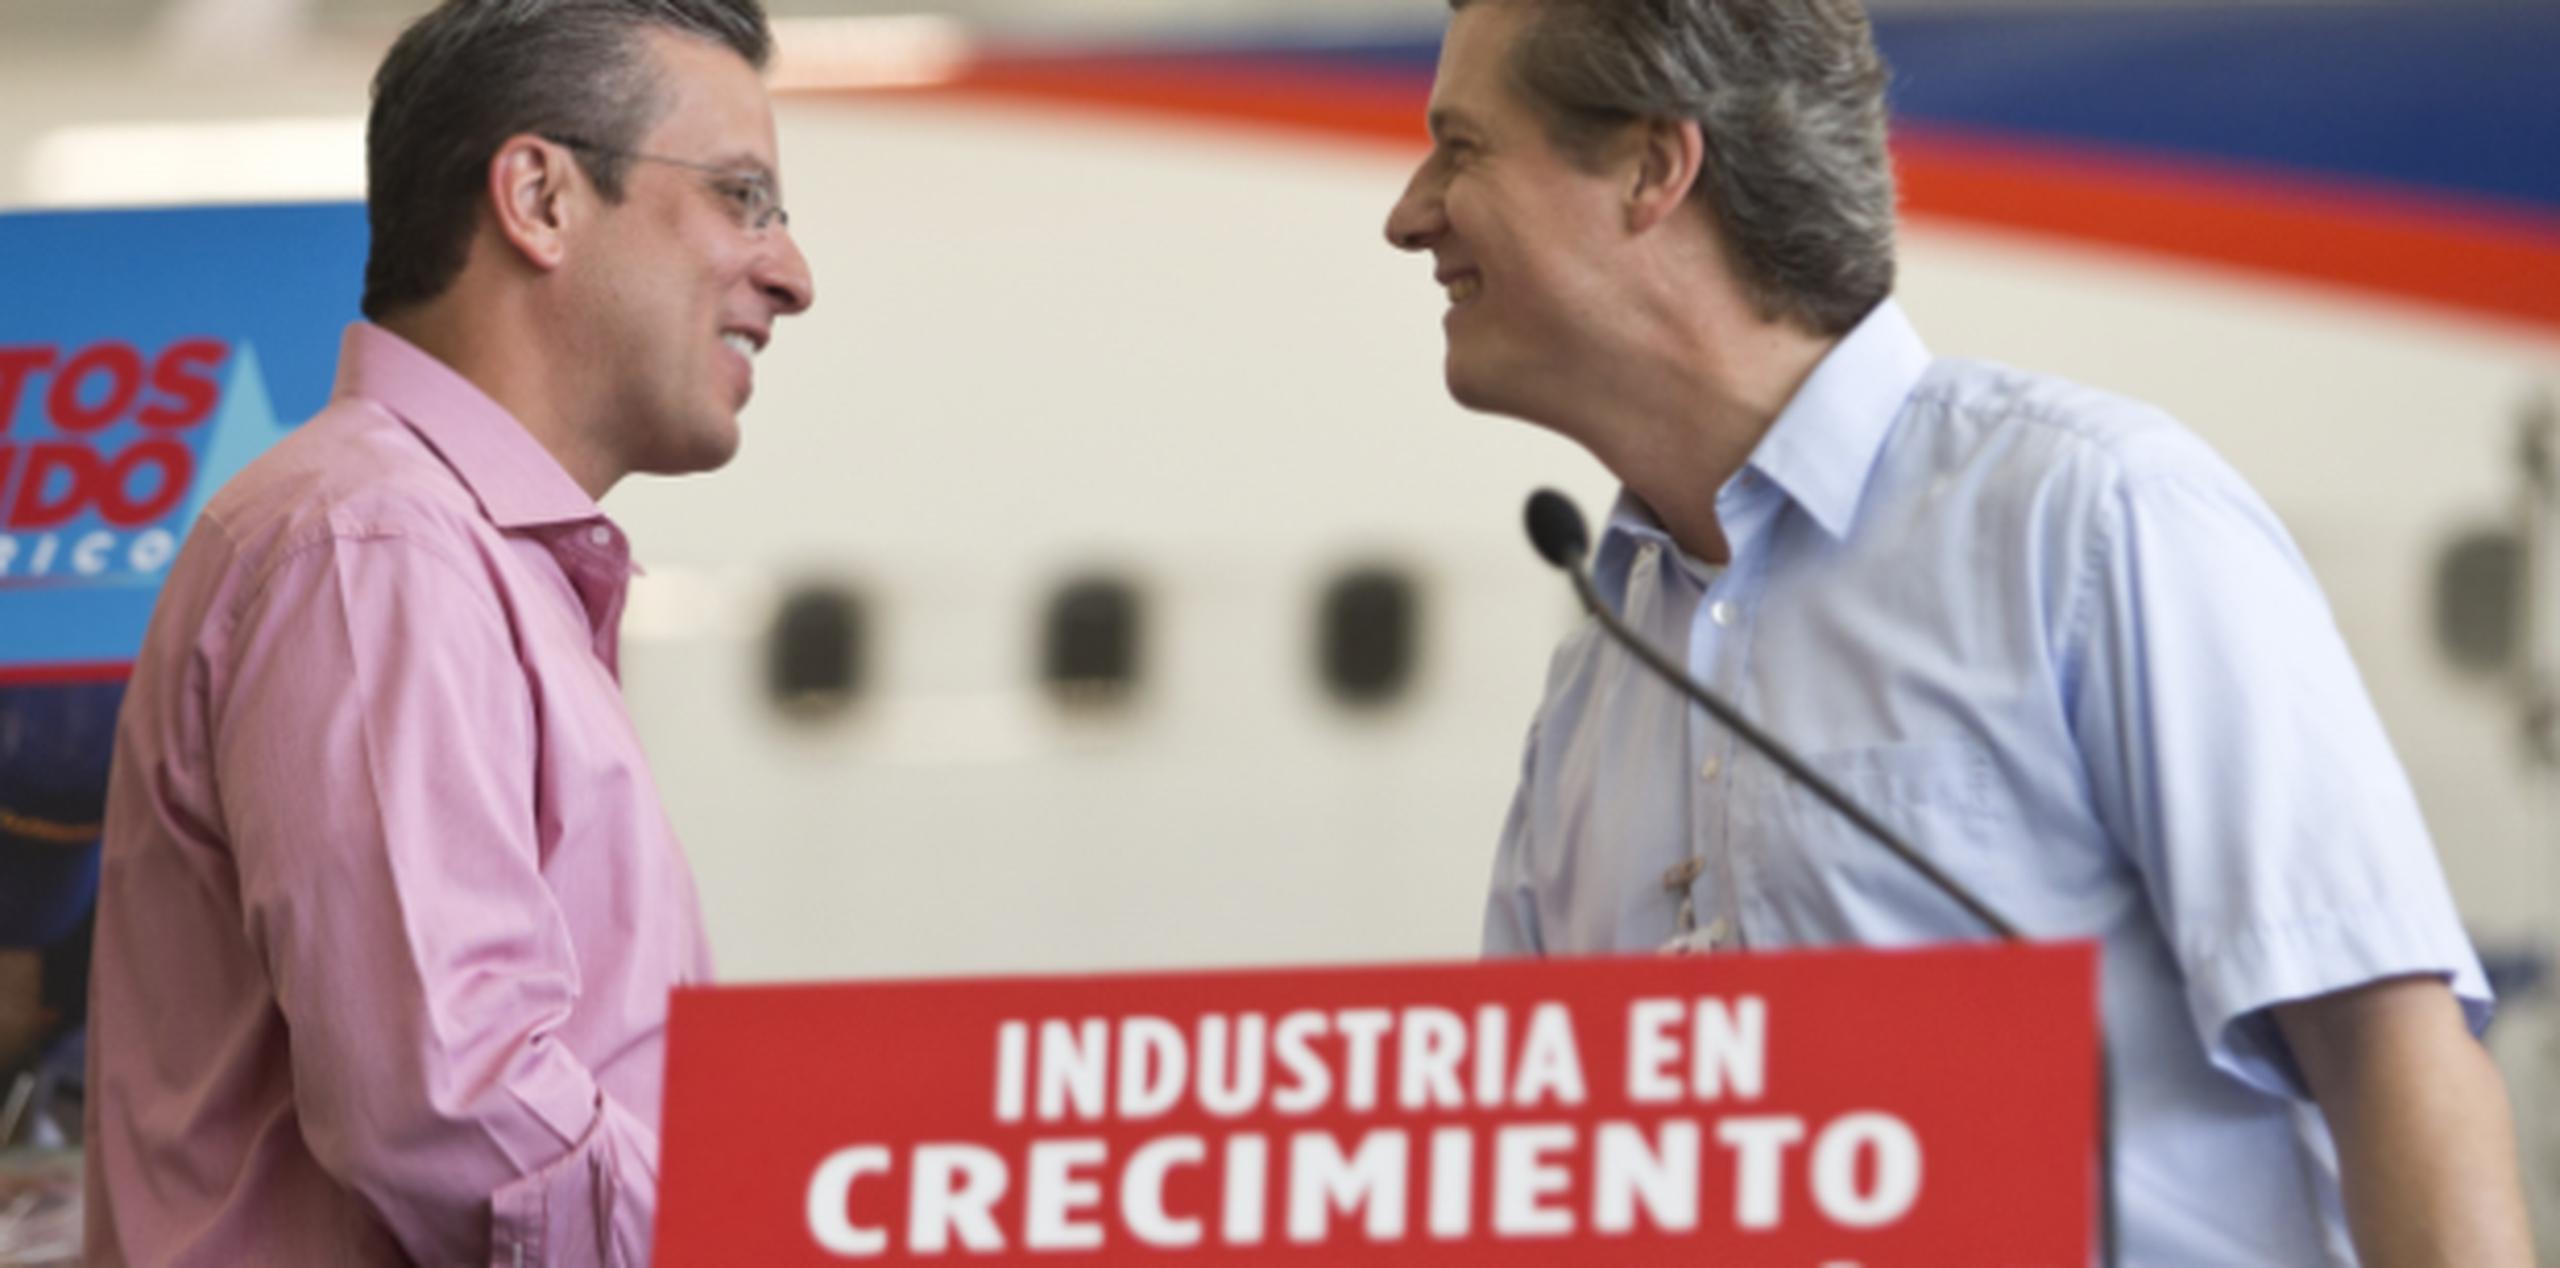 El gobernador Alejandro García Padilla y Elmar Lutterm CEO de Lufthansa Puerto Rico. (jorge.ramirez@gfrmedia.com)